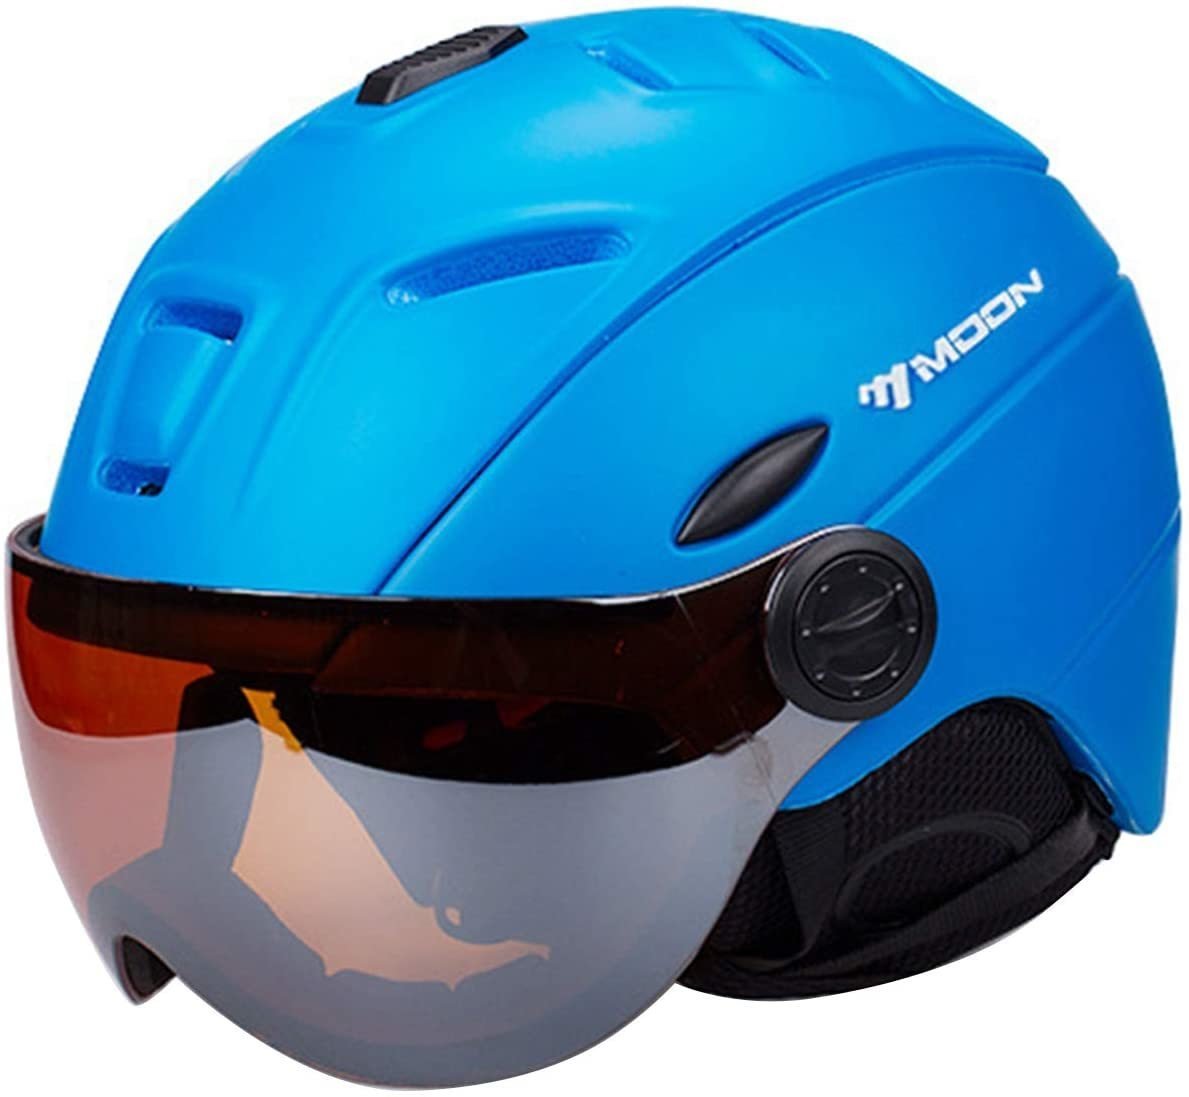 cxr02★スキー/スノーボードヘルメットオートバイ調節可能な防風ヘッドヘルメットスキー シールド付き UVカット ジェット 軽量5色可選青_画像1